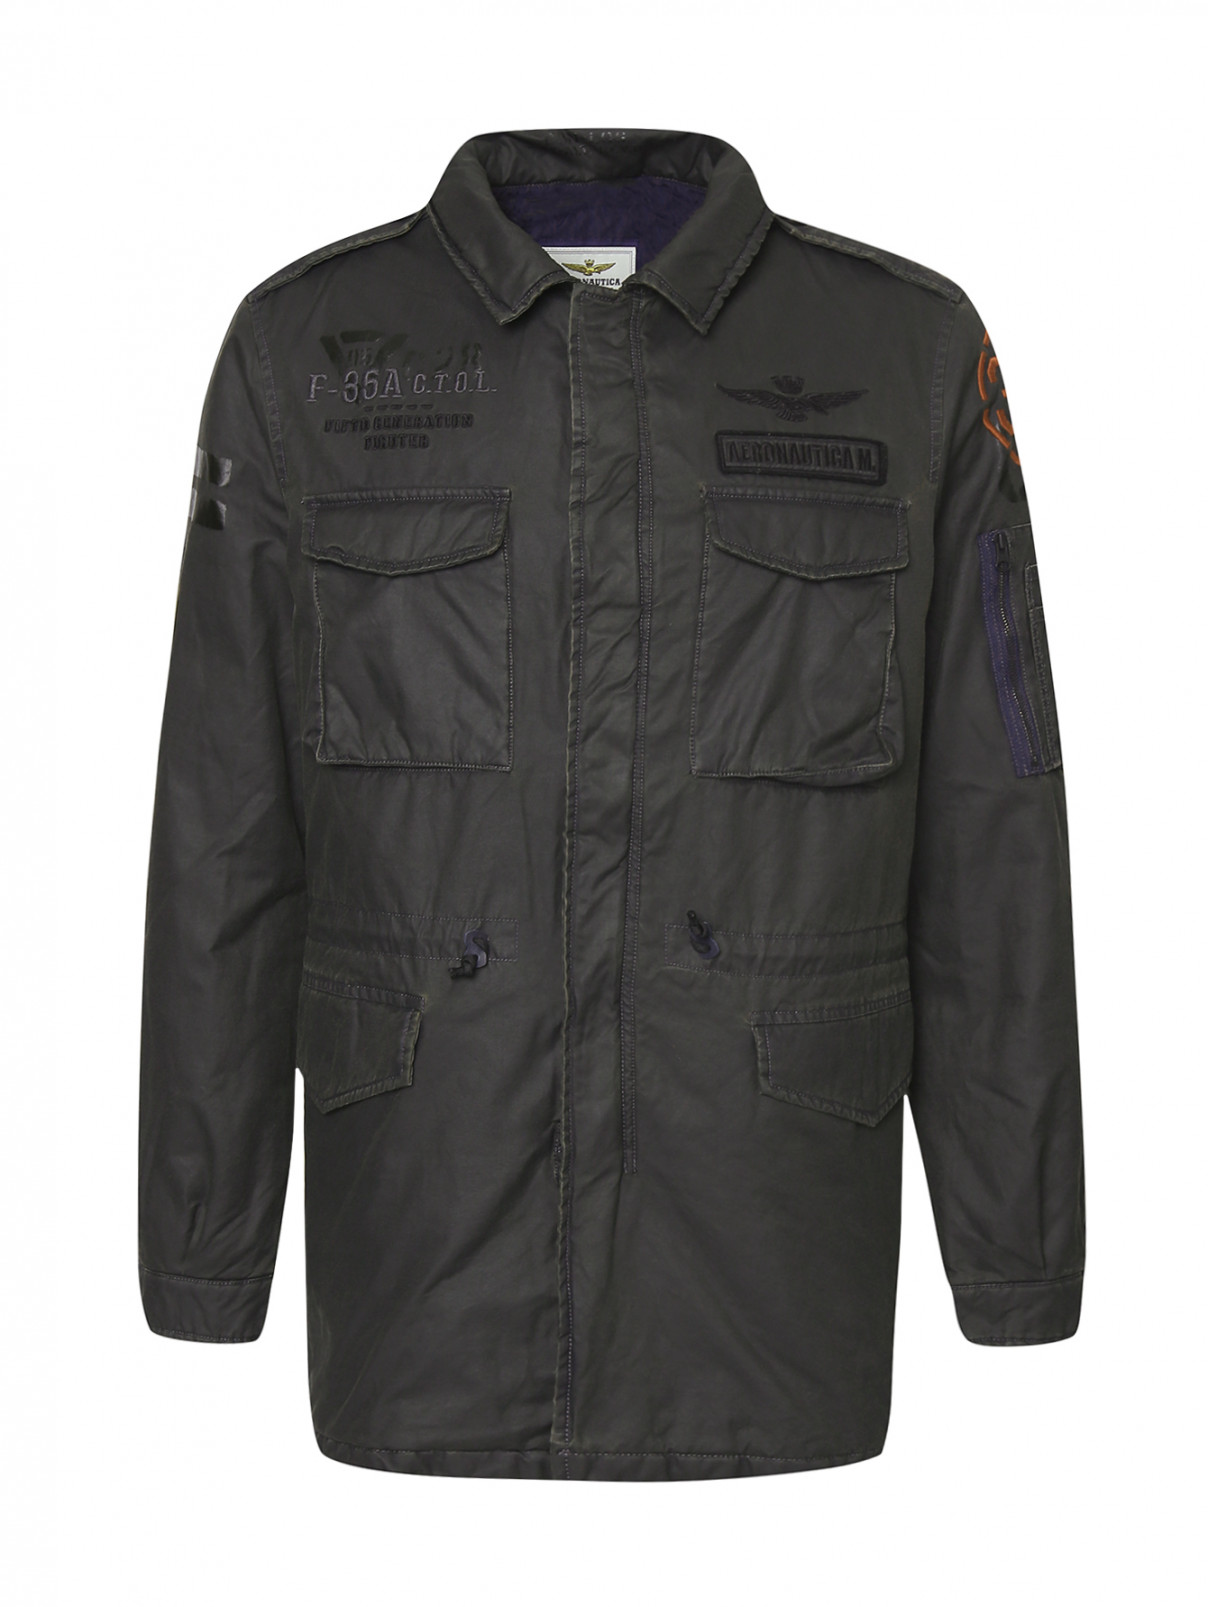 Куртка на молнии и с накладными карманами Aeronautica Militare  –  Общий вид  – Цвет:  Серый